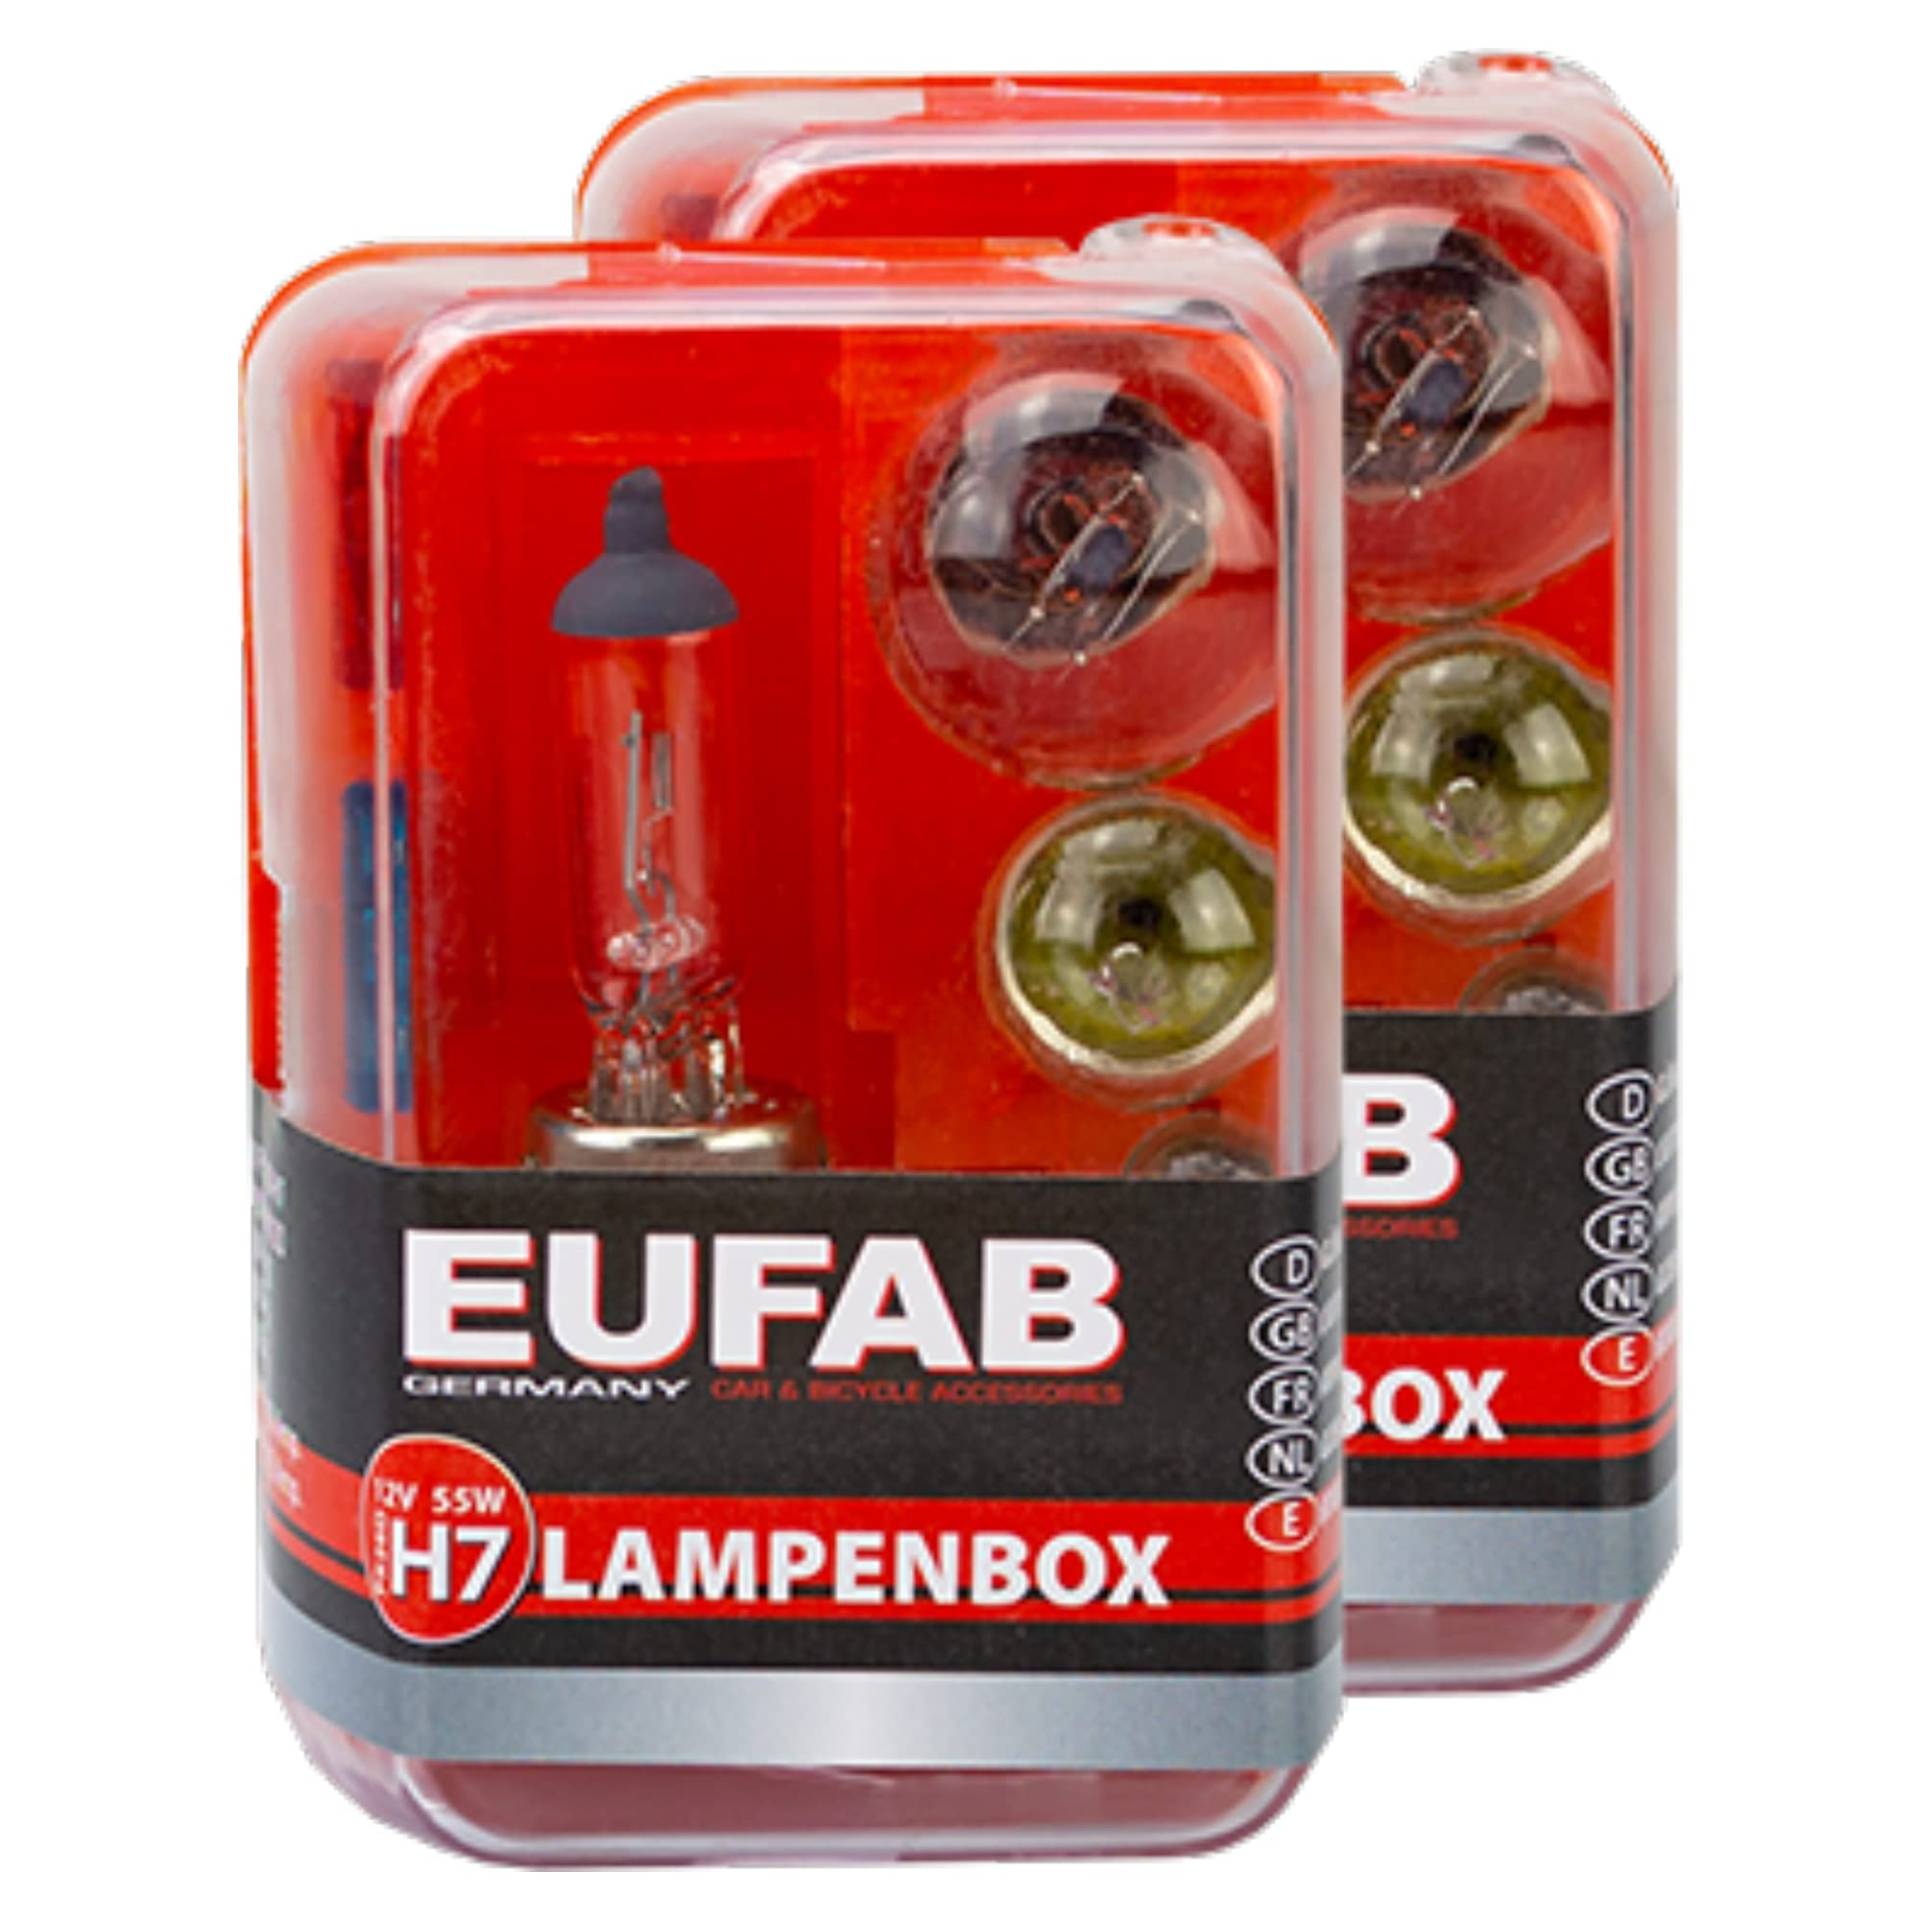 2X Eufab Autolampen Ersatzkasten Glühlampen Birnen Sicherungen Kasten Ersatz Lampen H7 12V von EAL